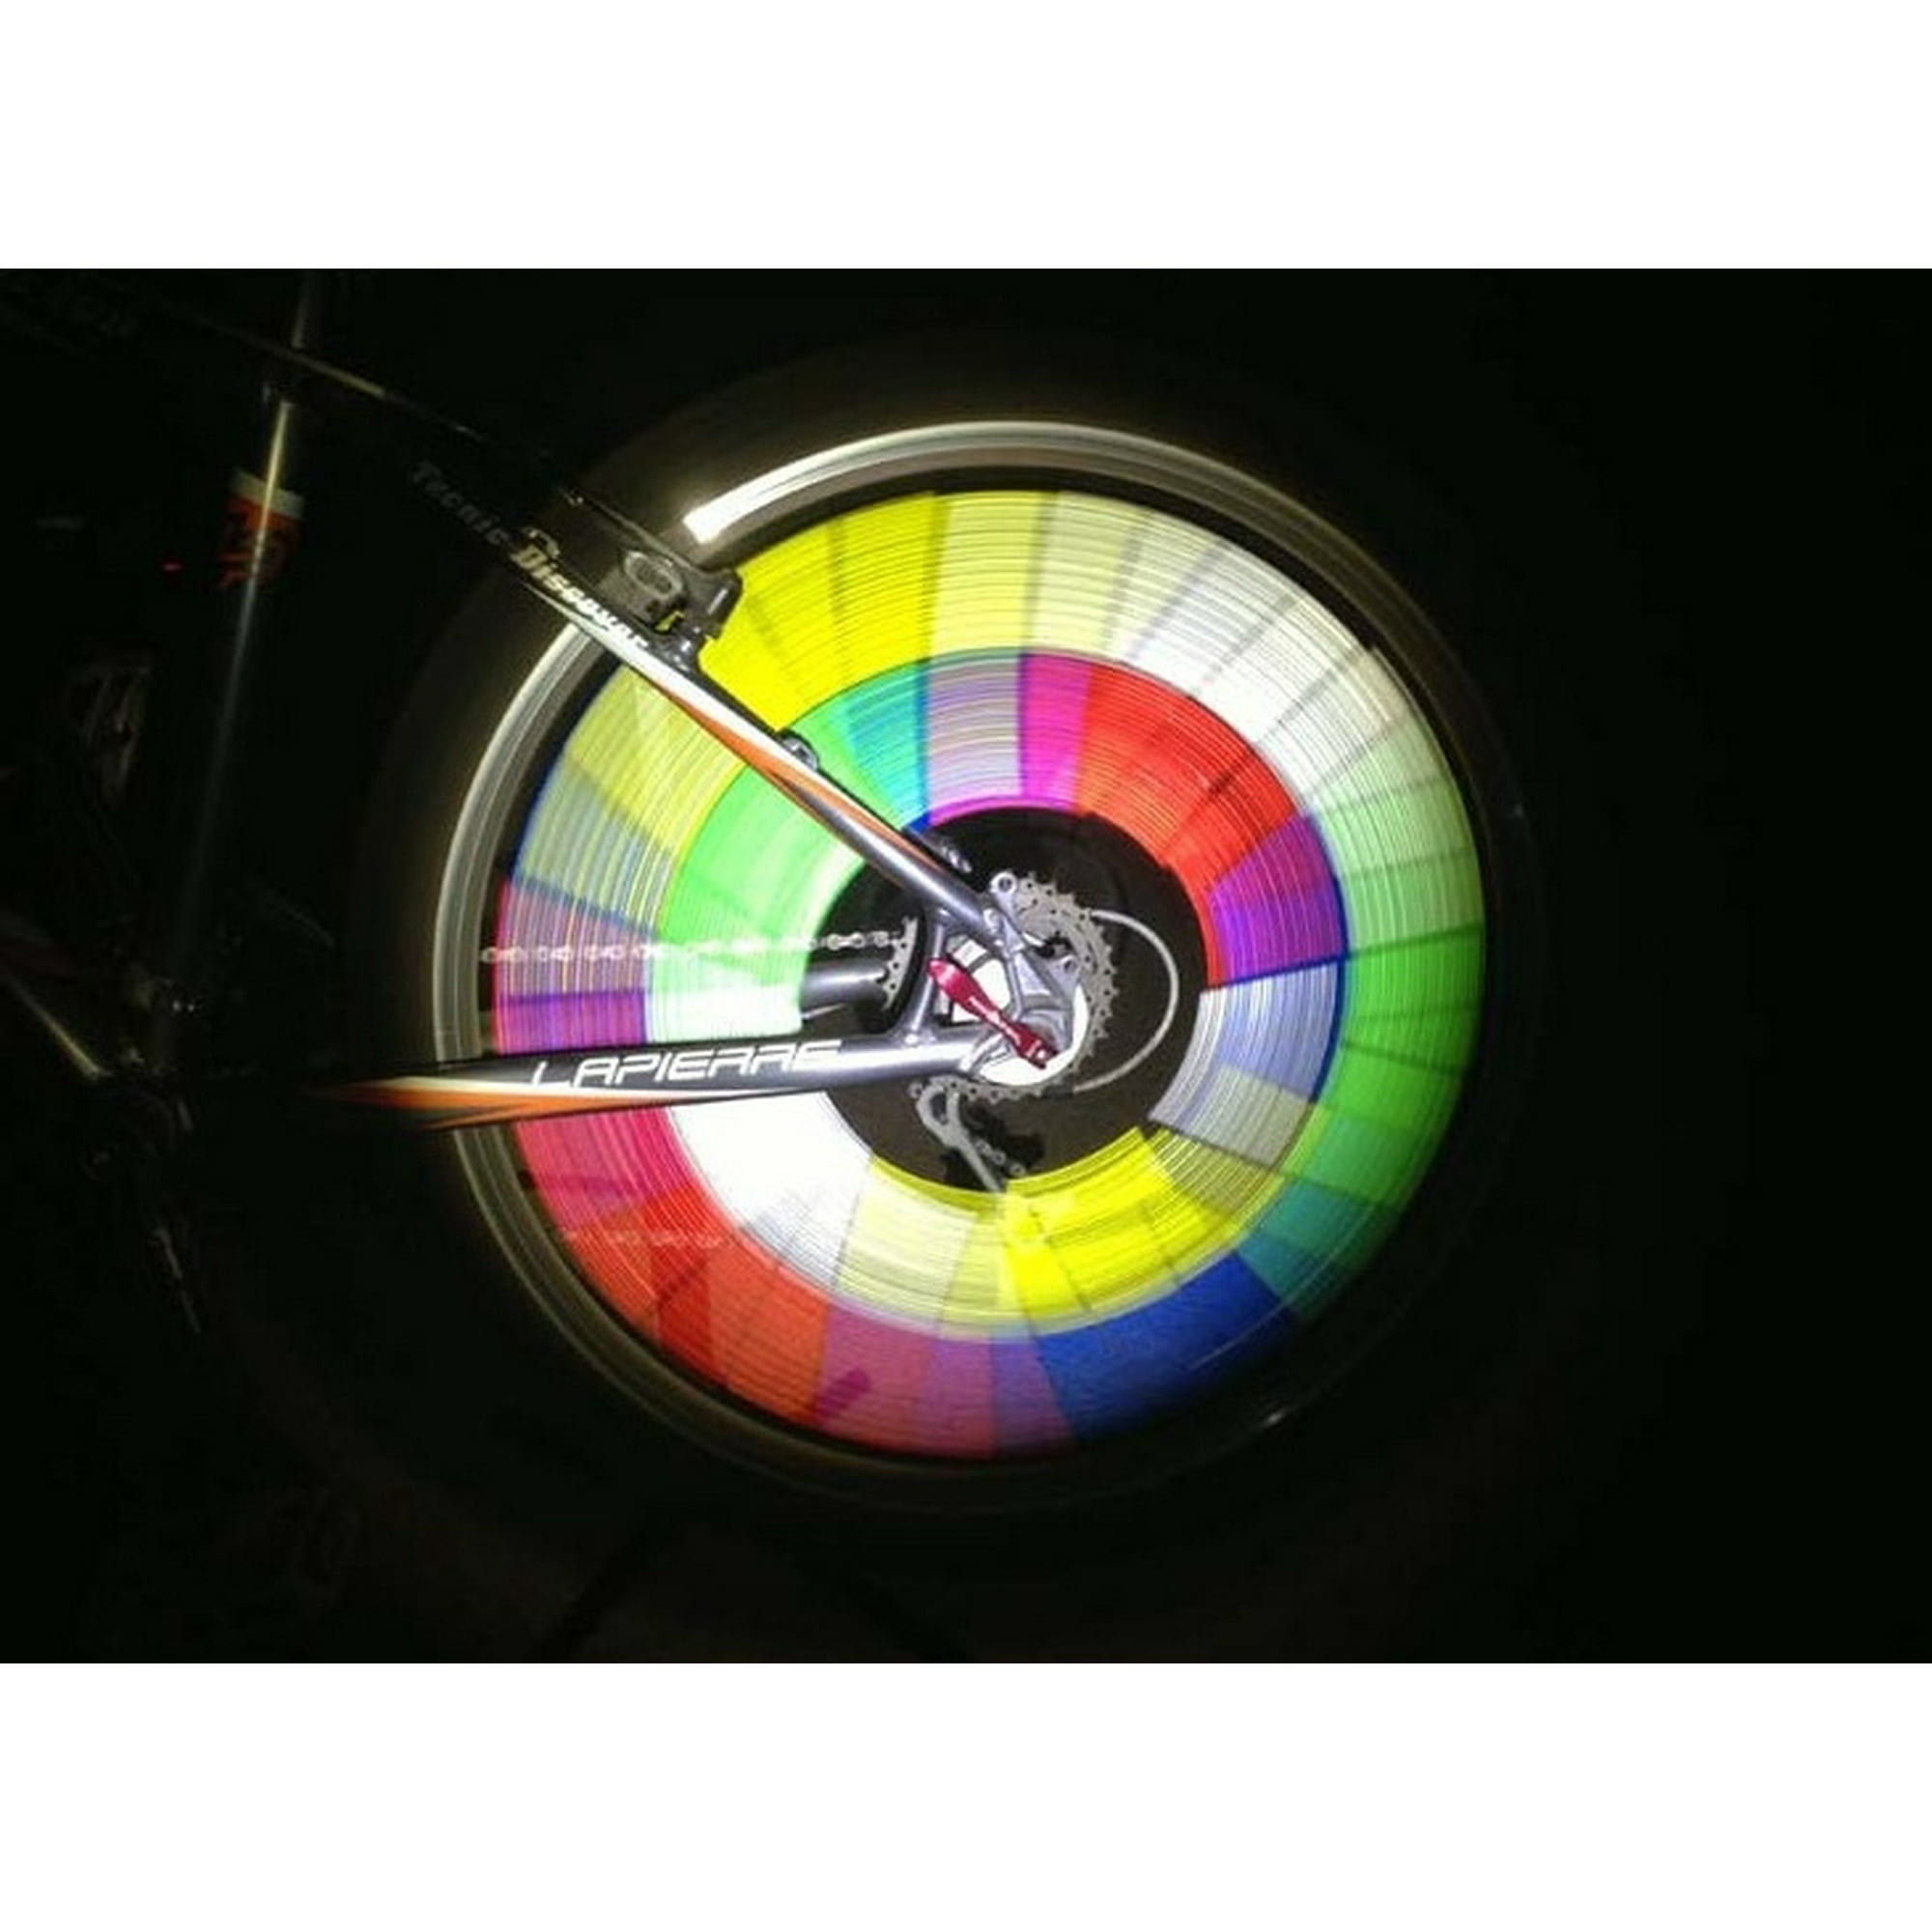 Rayons de vélo Rayons de vélo colorés Rayons Clicker Réflecteurs d'étoiles